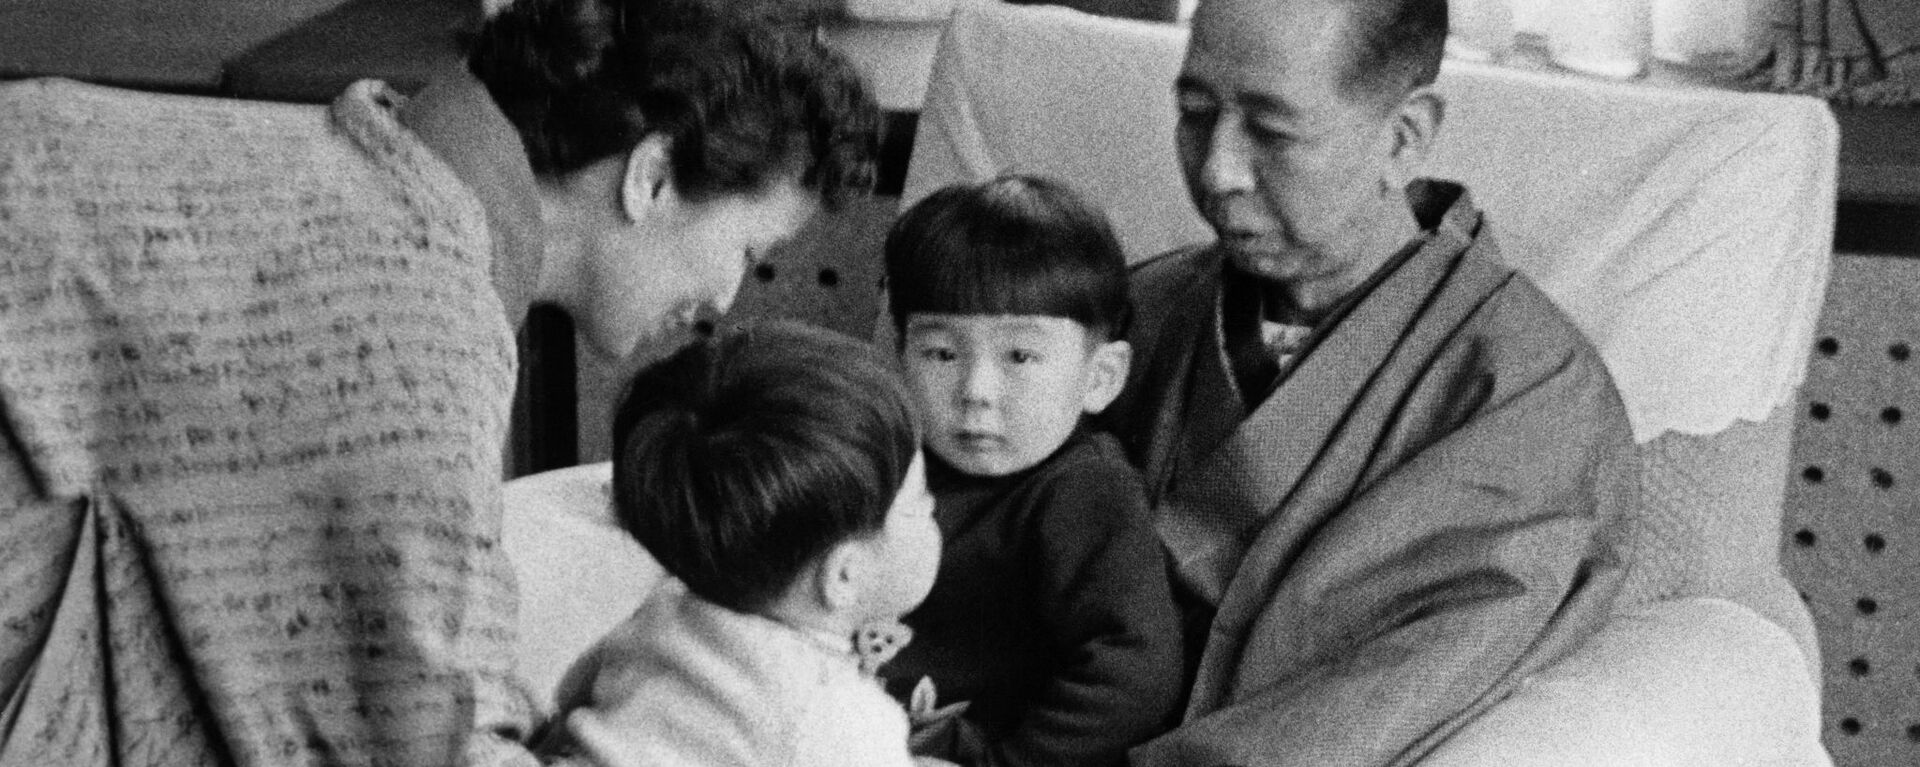 Япониялык саясатчы Синдзо Абэ чоң ата, чоң энеси менен. 1960-жыл - Sputnik Кыргызстан, 1920, 06.06.2021